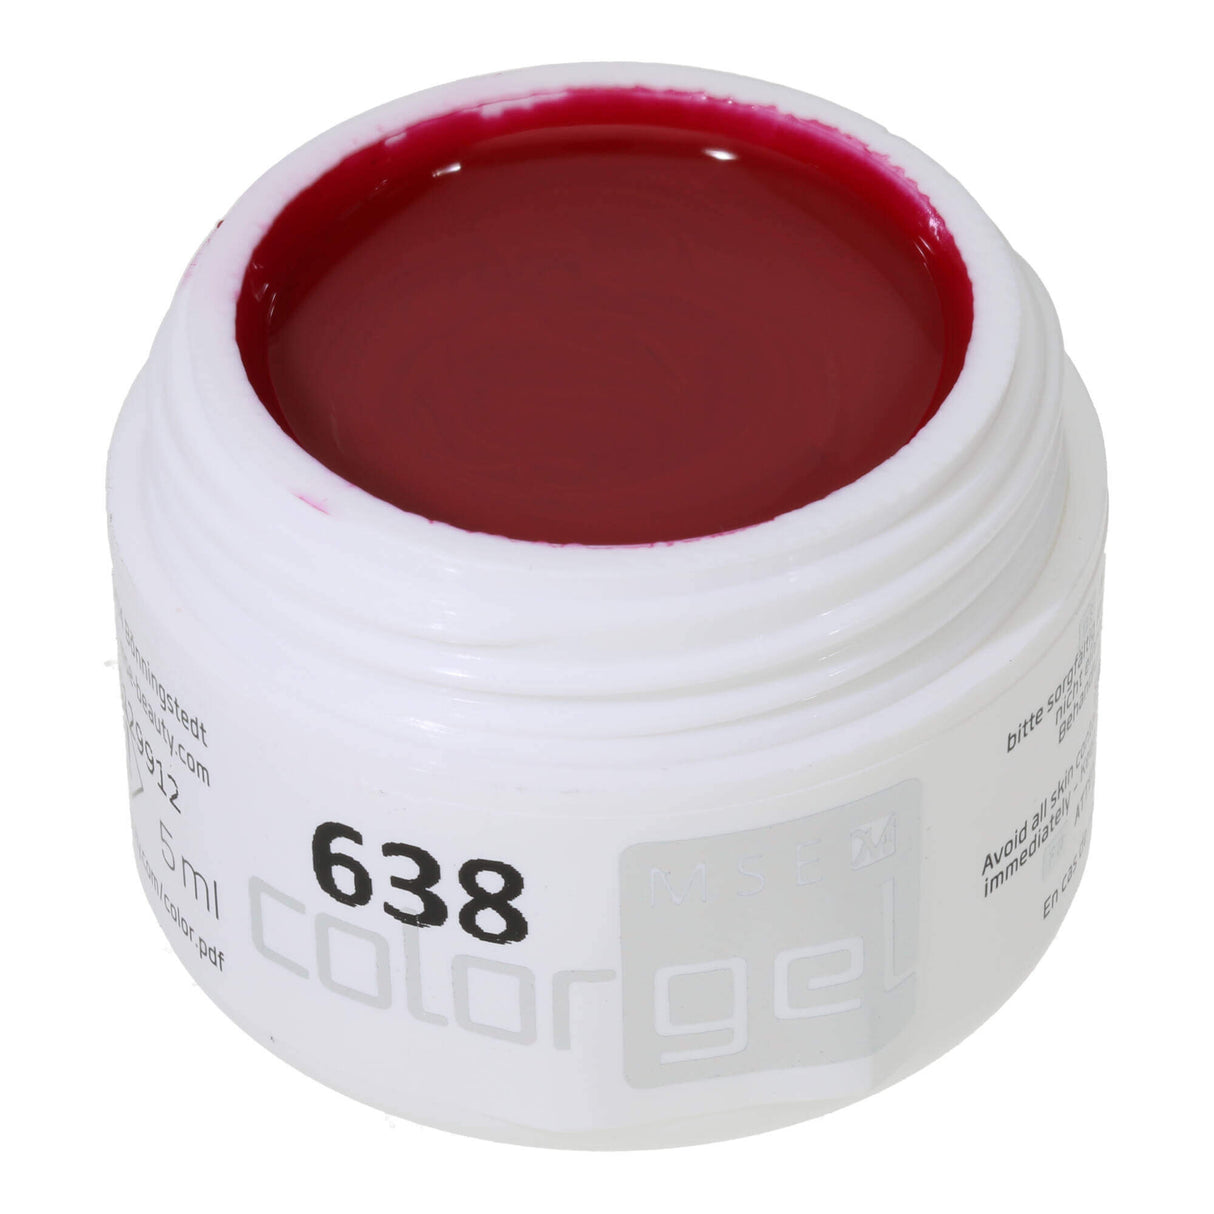 # 638 Premium-PURE Color Gel 5ml Red